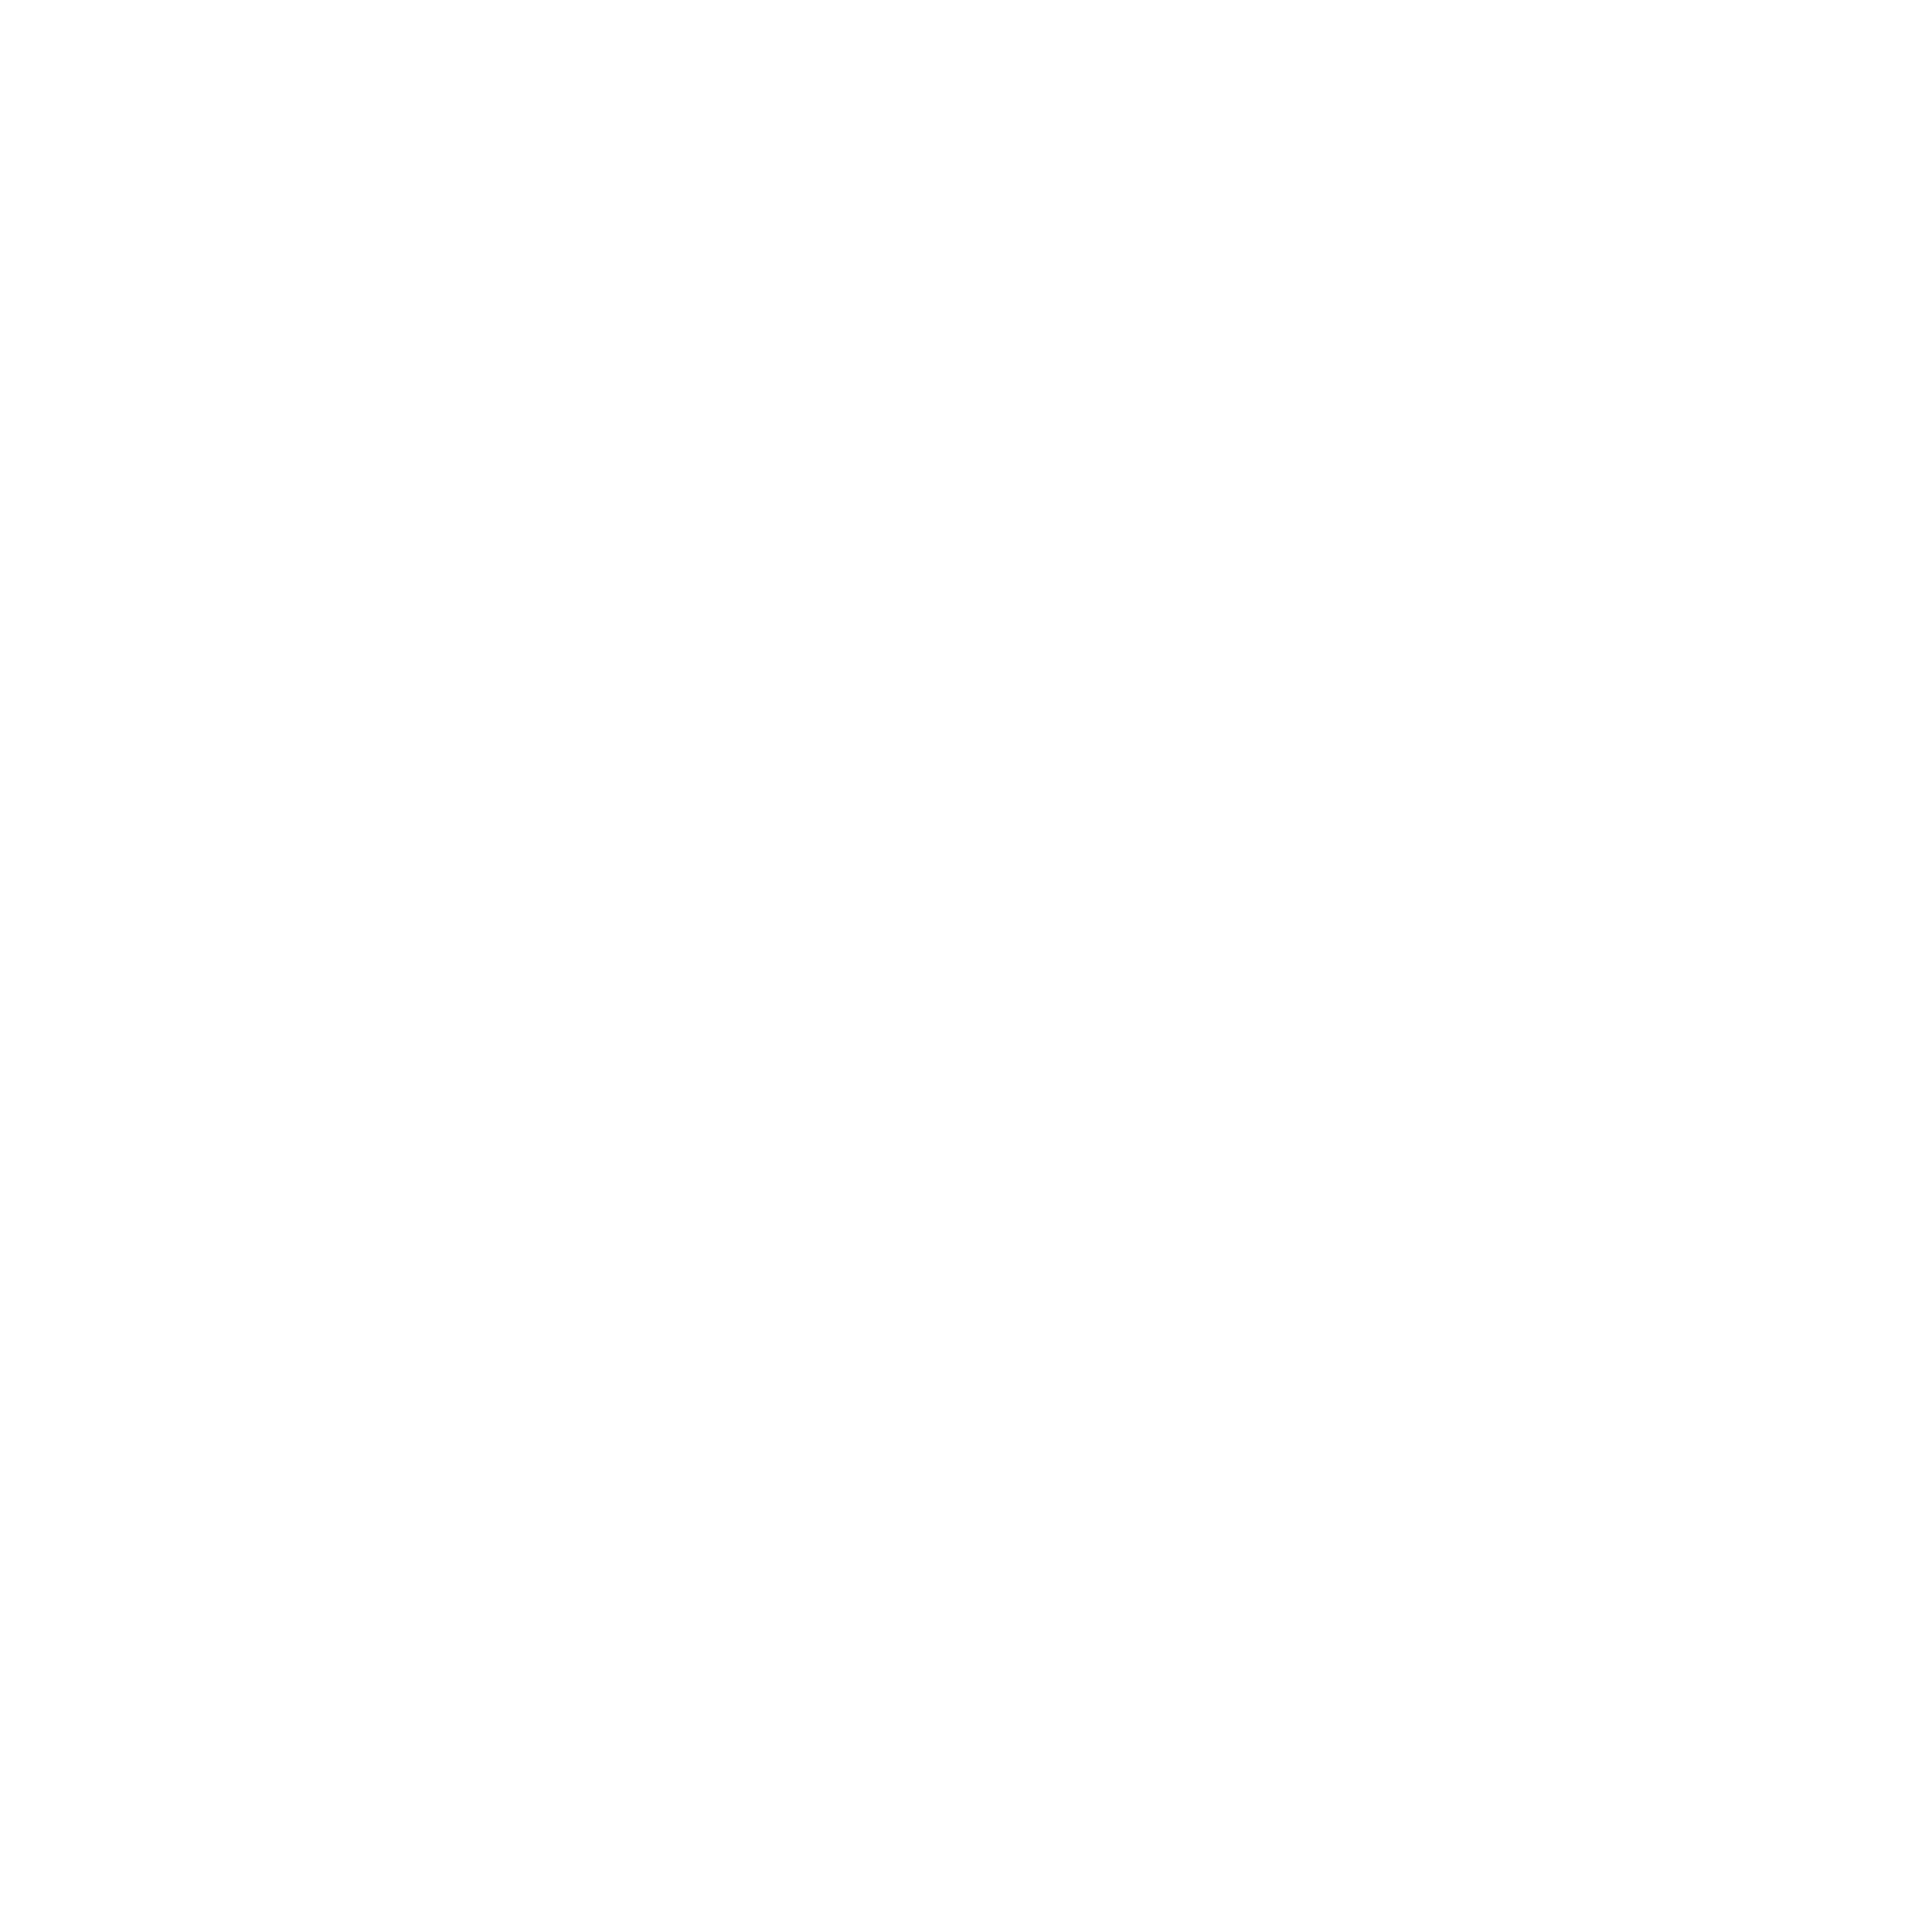 TISC